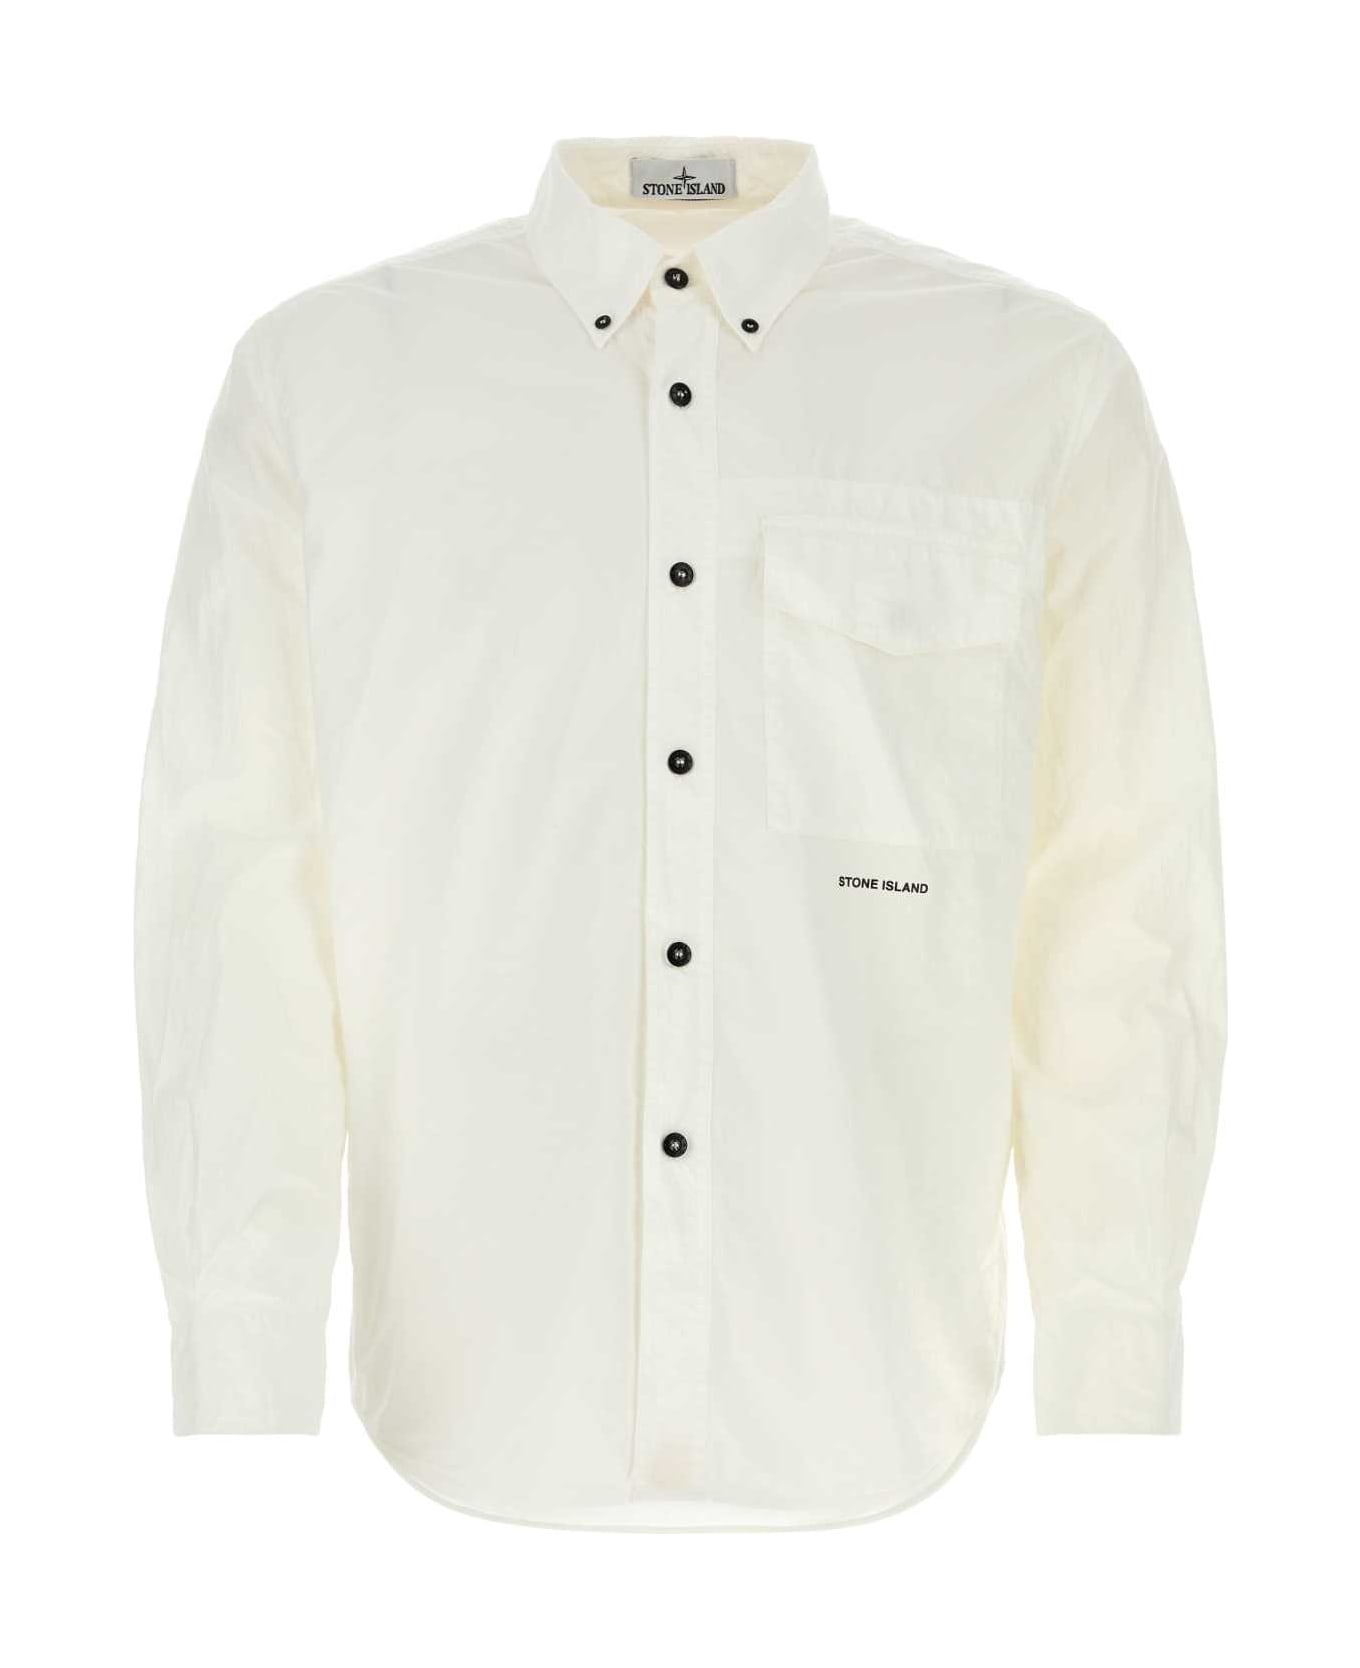 Stone Island White Cotton Shirt - WHITE シャツ